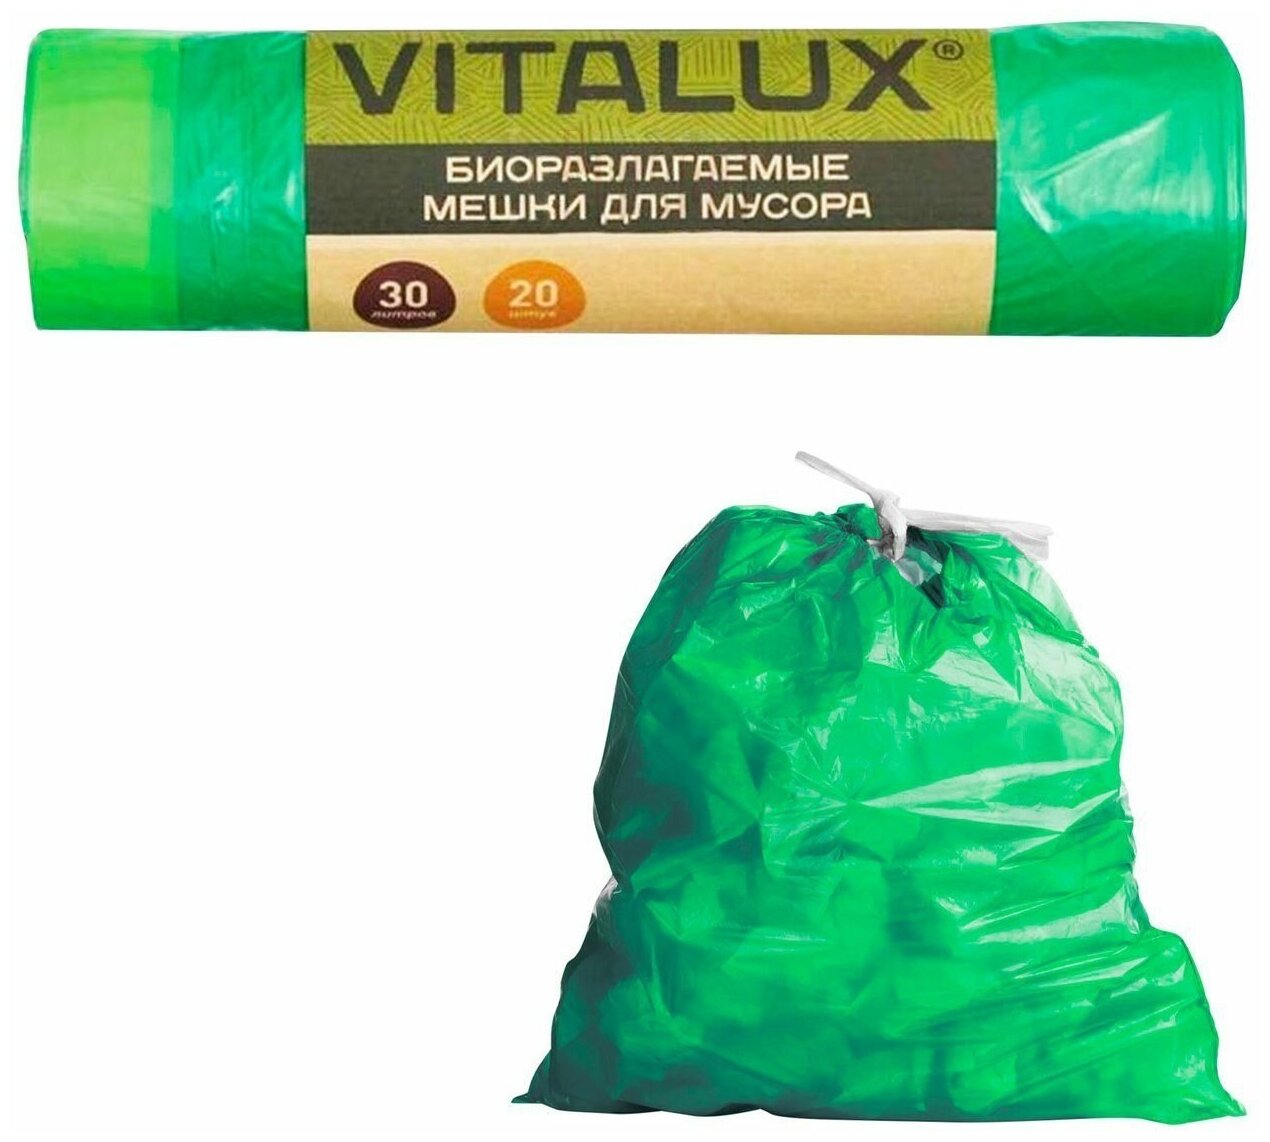 Мешки для мусора Vitalux (20 шт.)